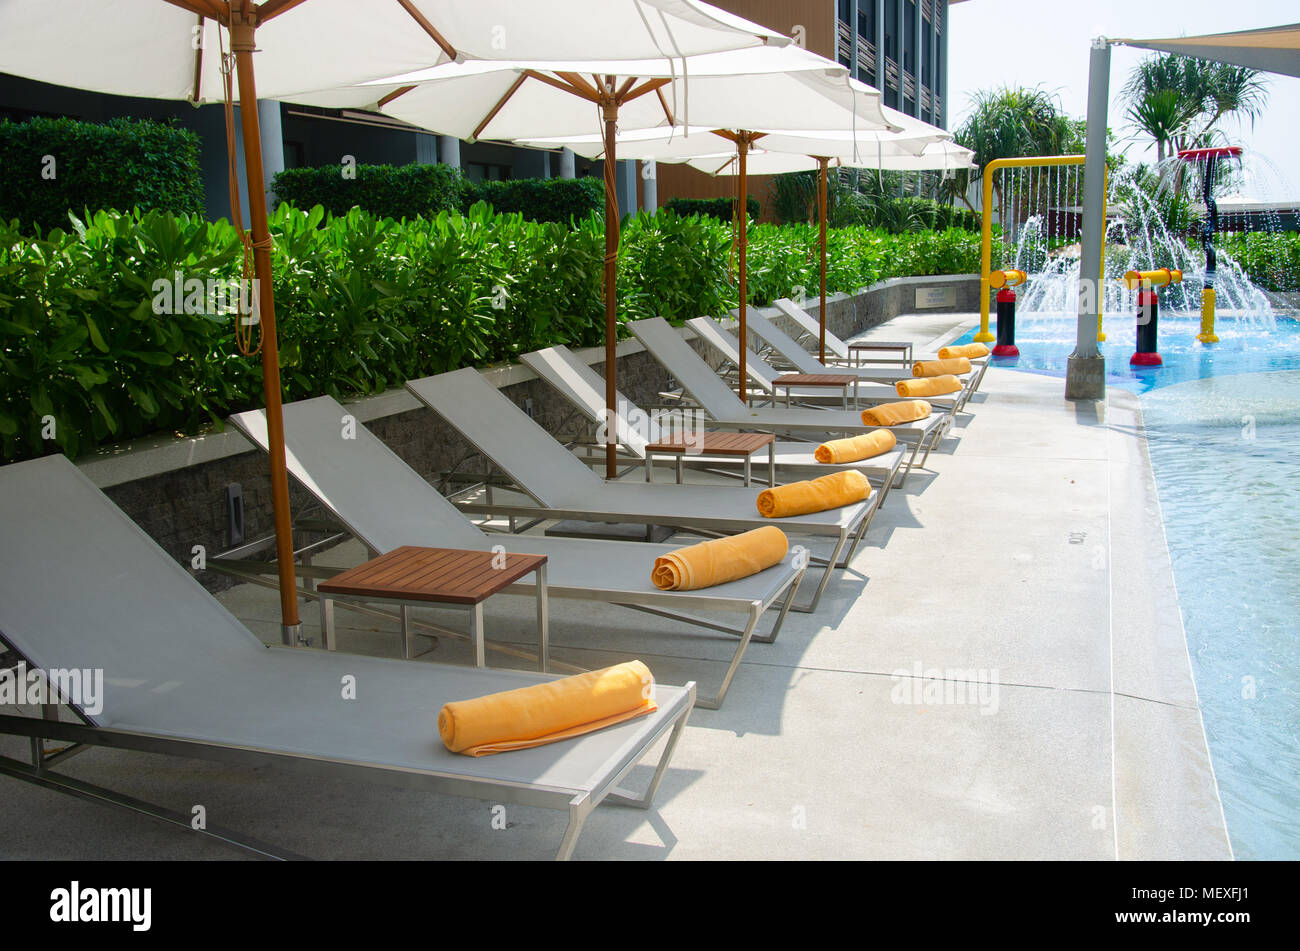 Schönen Luxus Liegestühle am Pool im Hotel Stockfotografie - Alamy